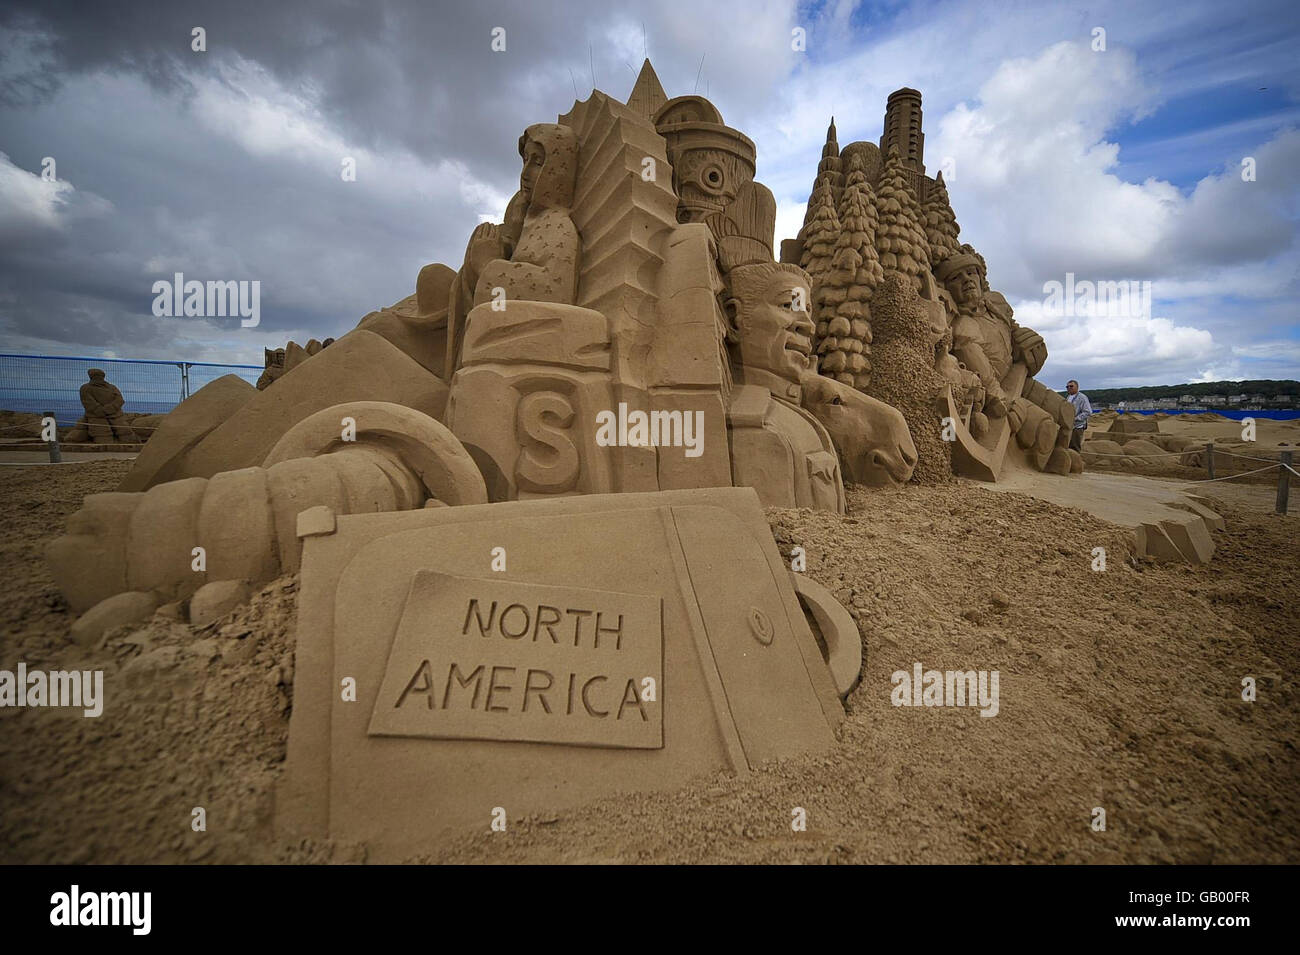 Une sculpture de sable nord-américaine, composée de totems, d'ours, d'un joueur de hockey, de sapins et de bâtiments sculptés par Jill et Thomas de Floride, se trouve sur la plage Weston-Super-Mare. Banque D'Images